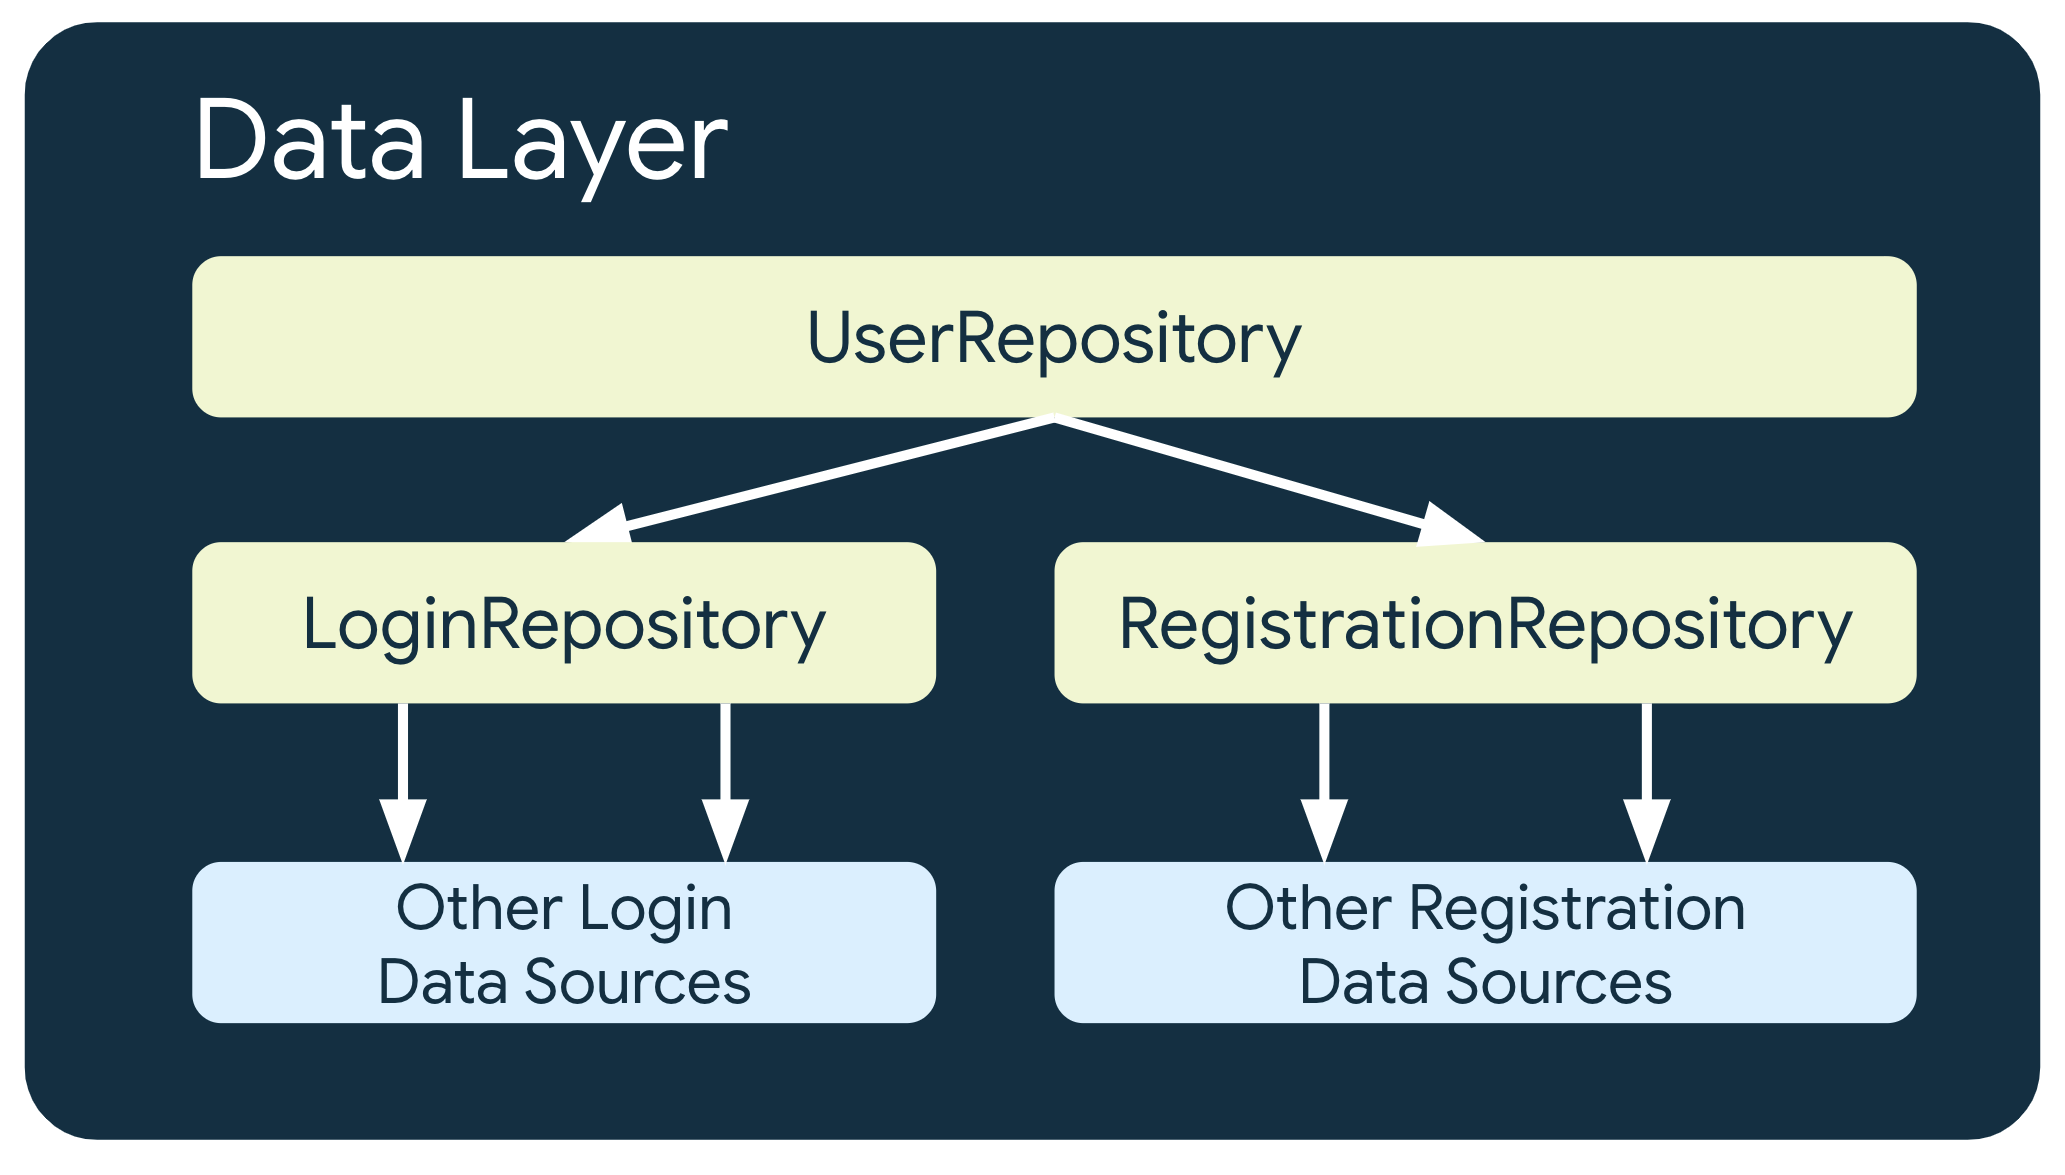 在這個範例中，UserRepository 取決於另外兩個存放區類別：LoginRepository，取決於其他登入資料來源；以及 Registration Repositories，取決於其他註冊資料來源。